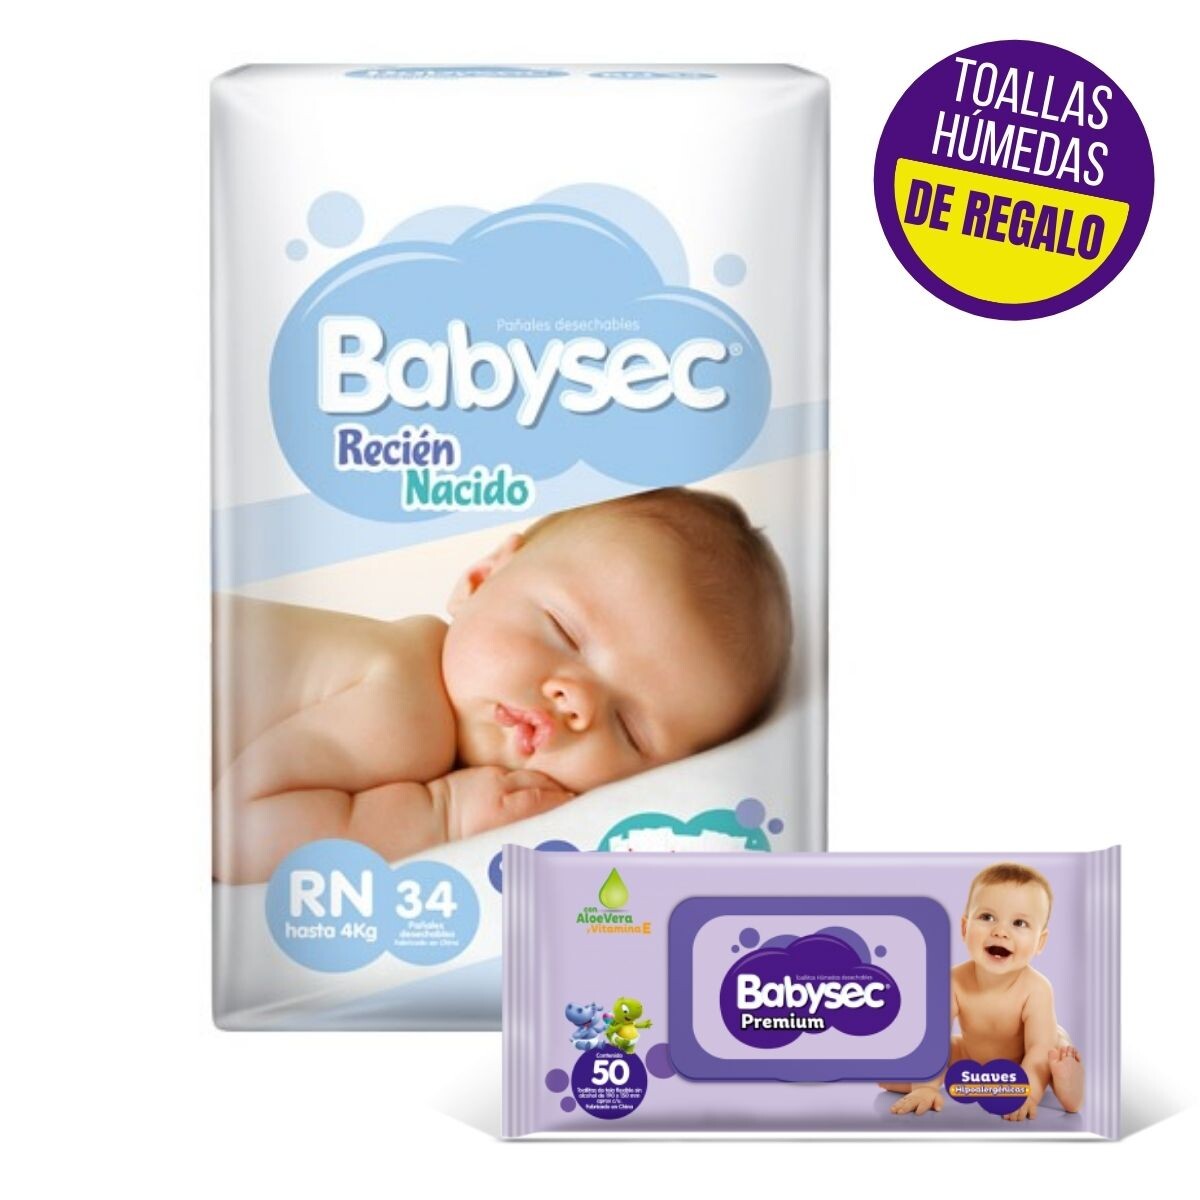 Pañales Babysec Recién Nacido + Toallita Húmeda de Regalo Premium X50 